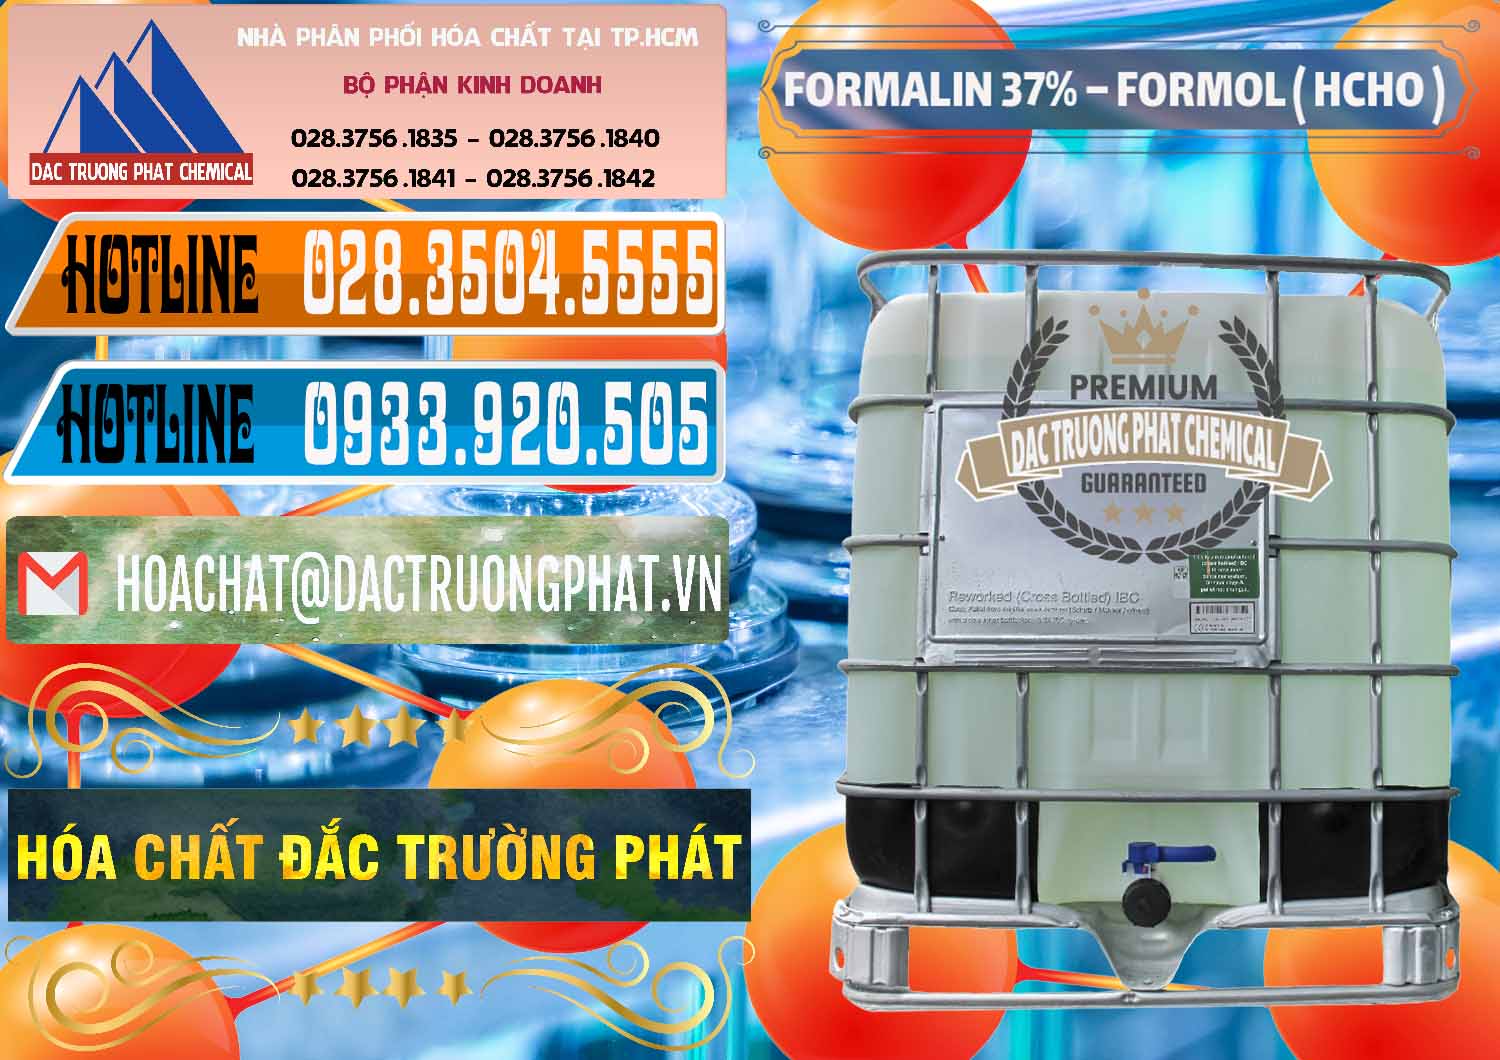 Nhà phân phối & cung ứng Formalin - Formol ( HCHO ) 37% Việt Nam - 0187 - Cty chuyên kinh doanh - phân phối hóa chất tại TP.HCM - stmp.net